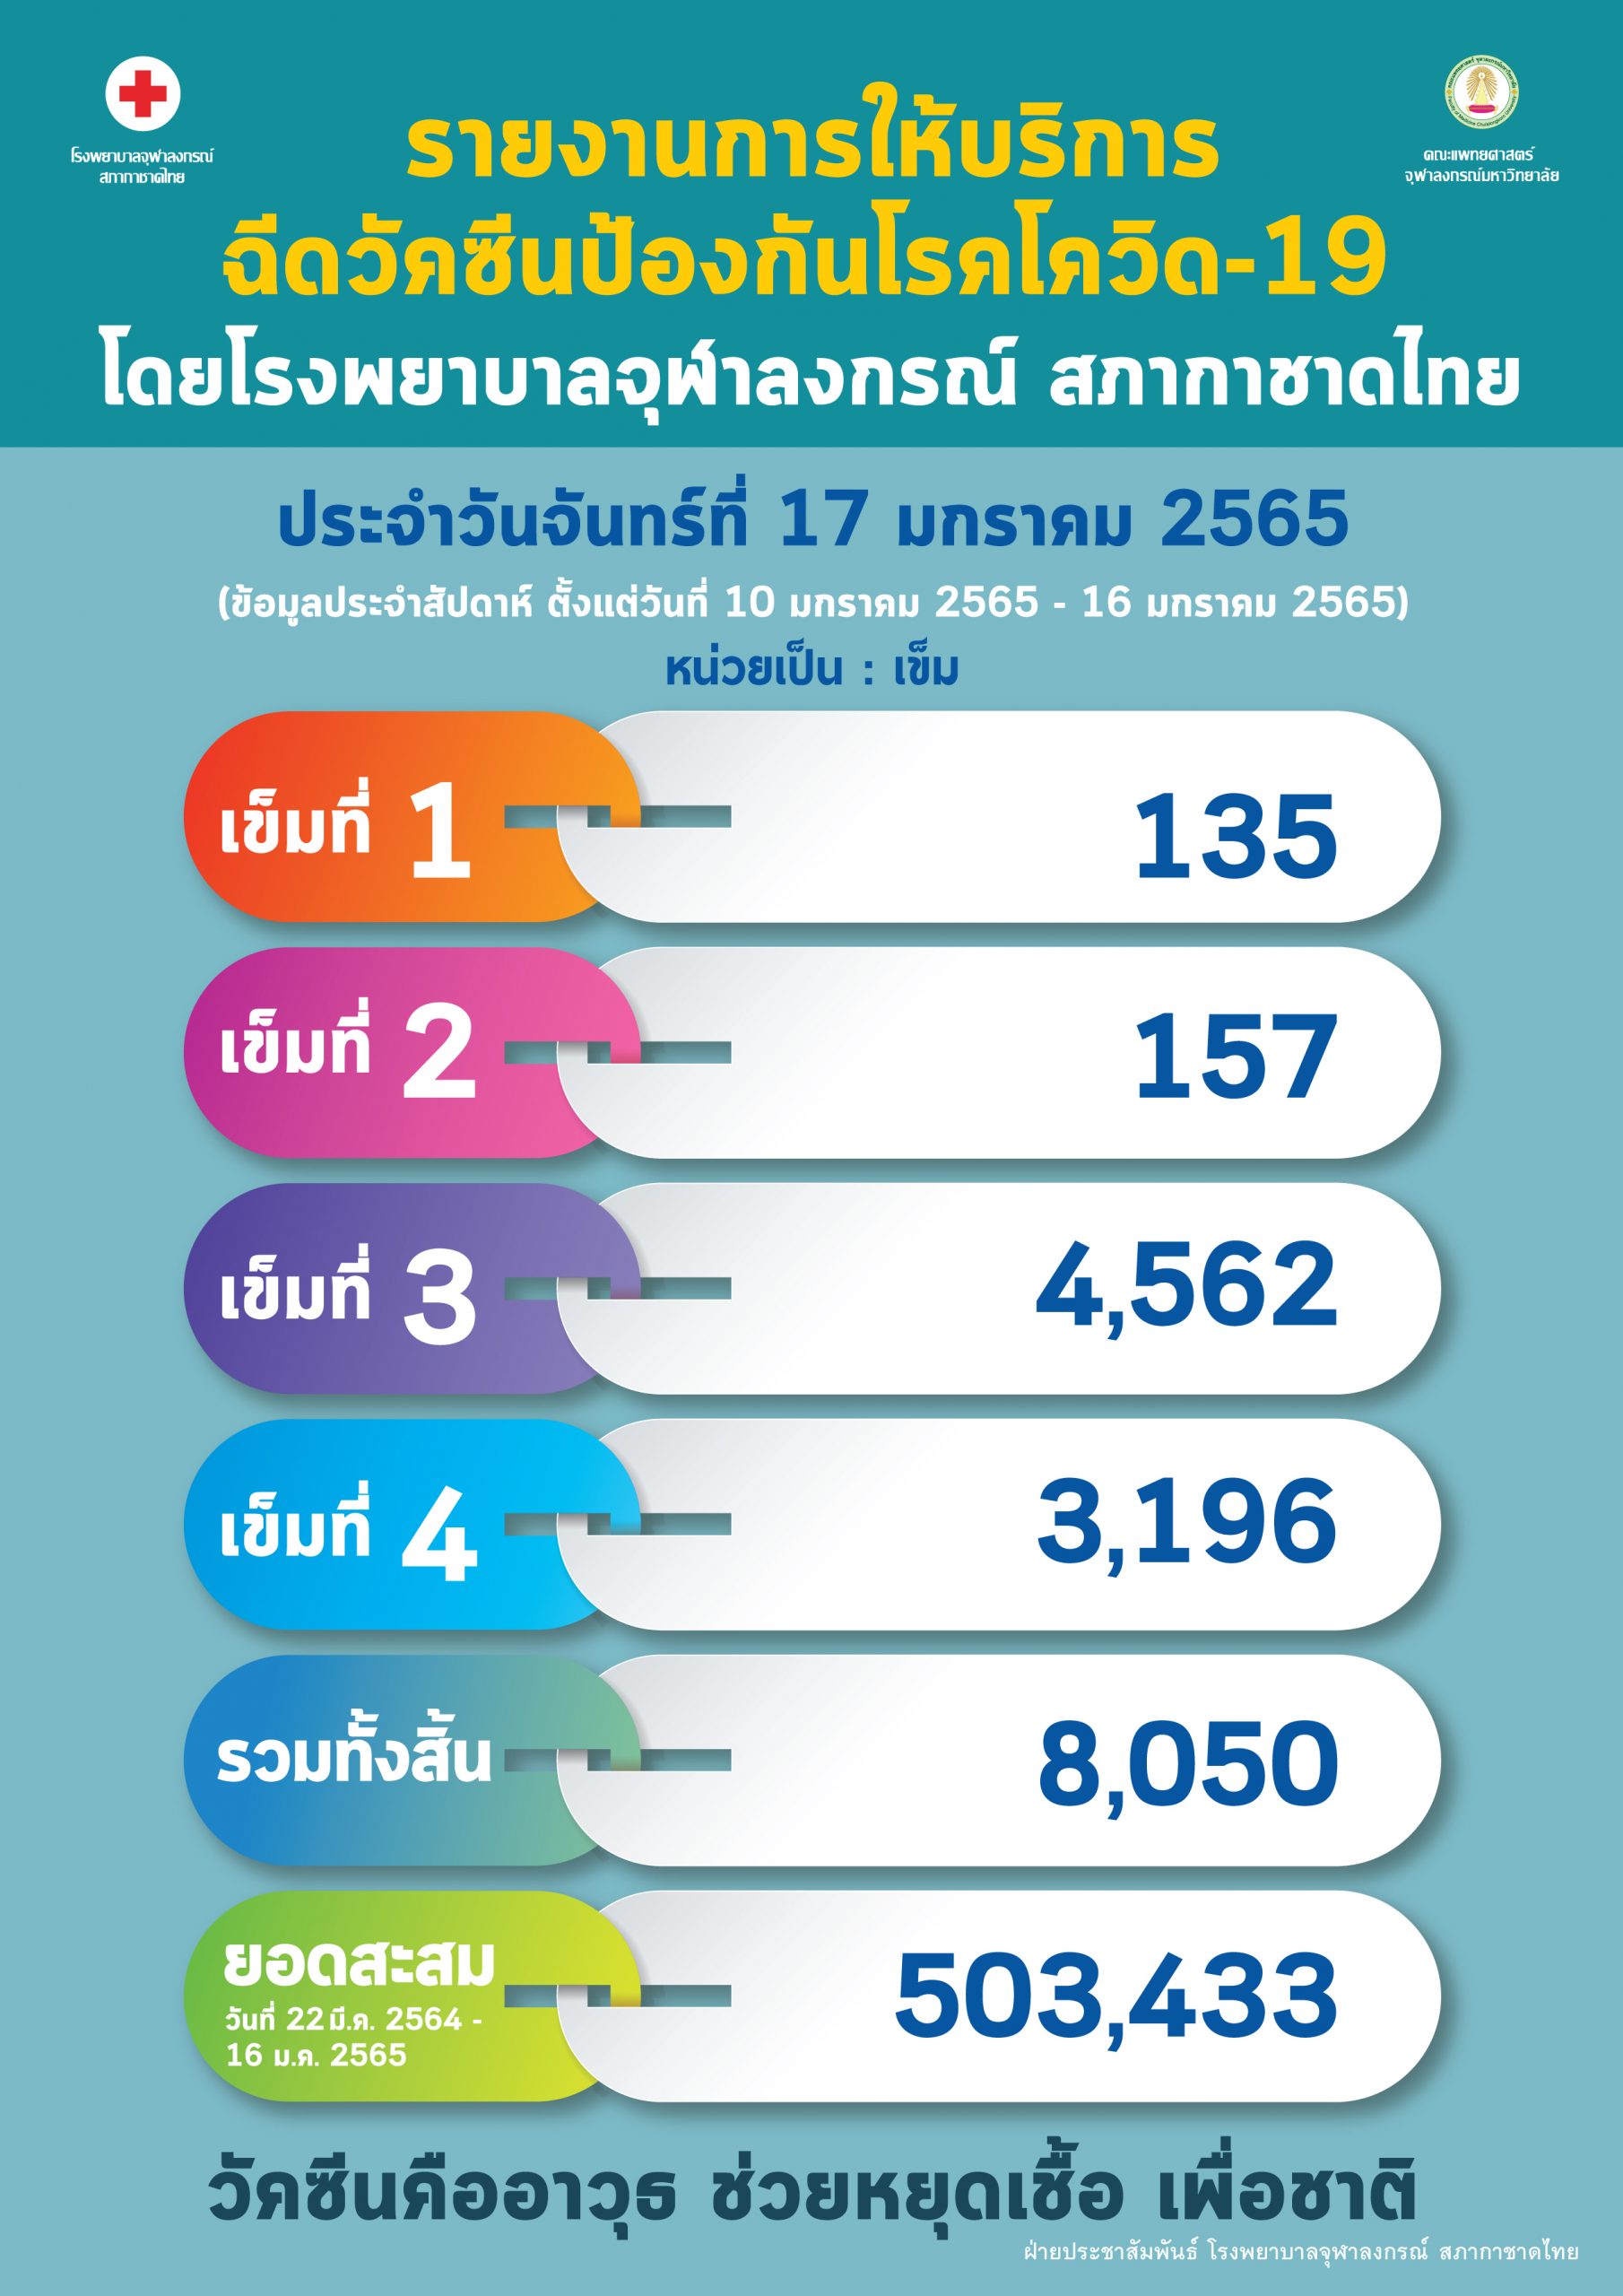 รายงานการให้บริการฉีดวัคซีนป้องกันโรคโควิด-19 โดยโรงพยาบาลจุฬาลงกรณ์ สภากาชาดไทย ประจำวันจันทร์ที่ 17 มกราคม 2565